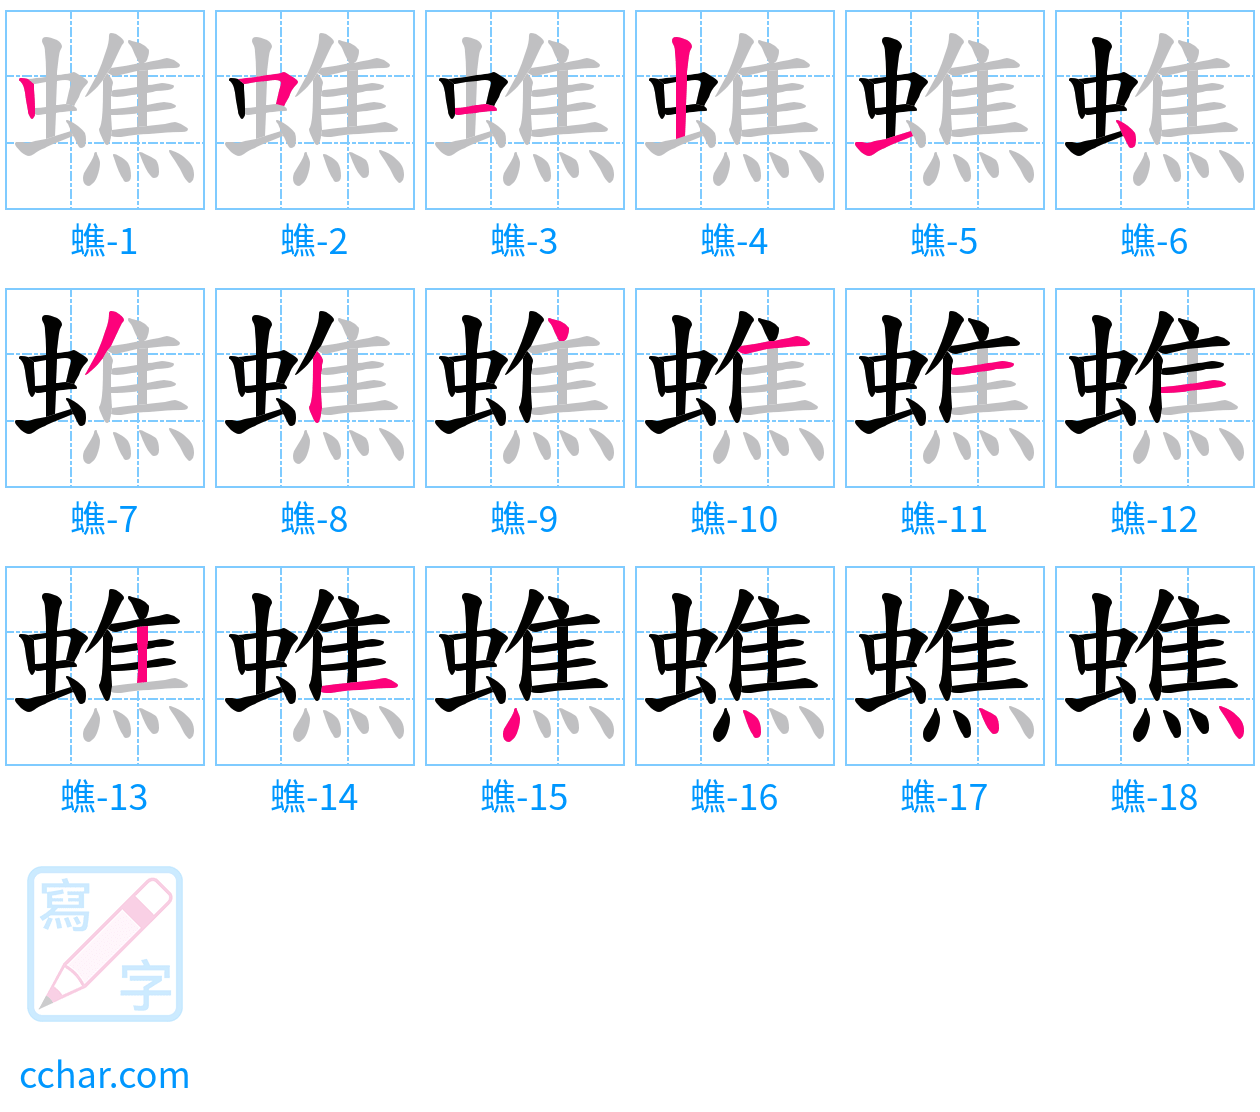 蟭 stroke order step-by-step diagram